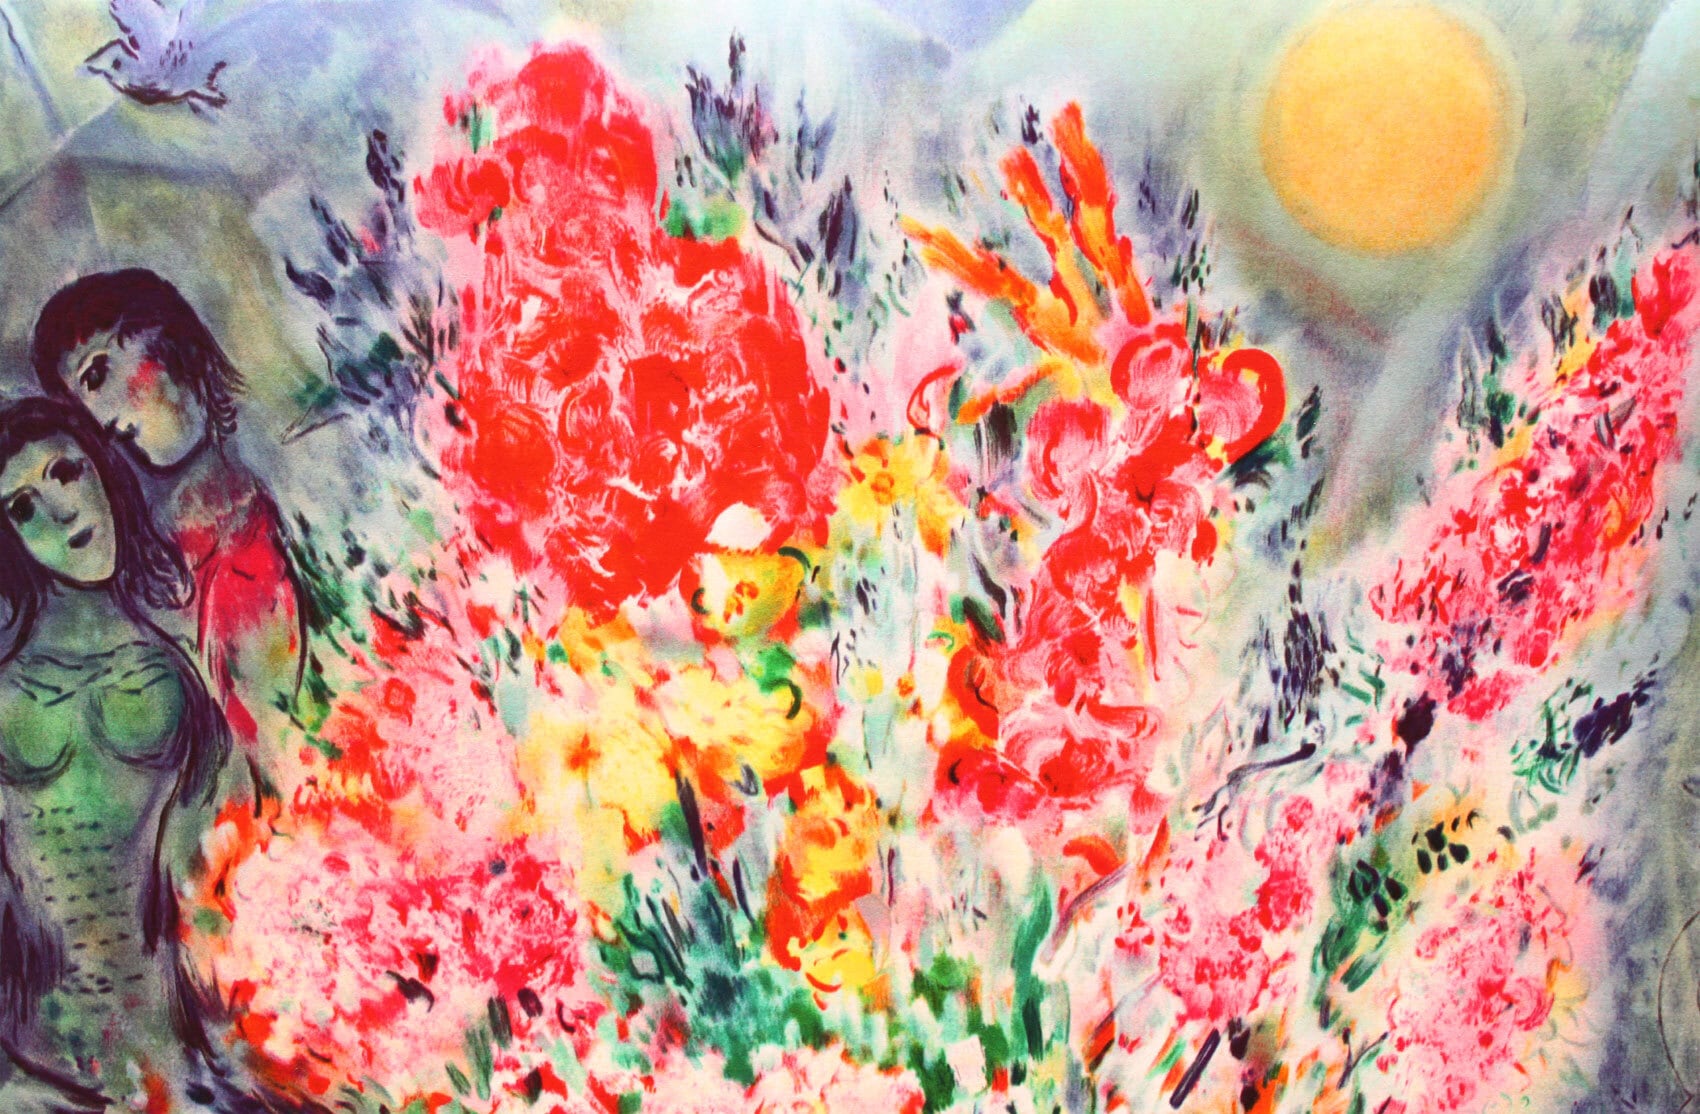 マルク・シャガール絵画「花束」作品証明書・展示用フック・限定375部エディション付複製画ジークレ